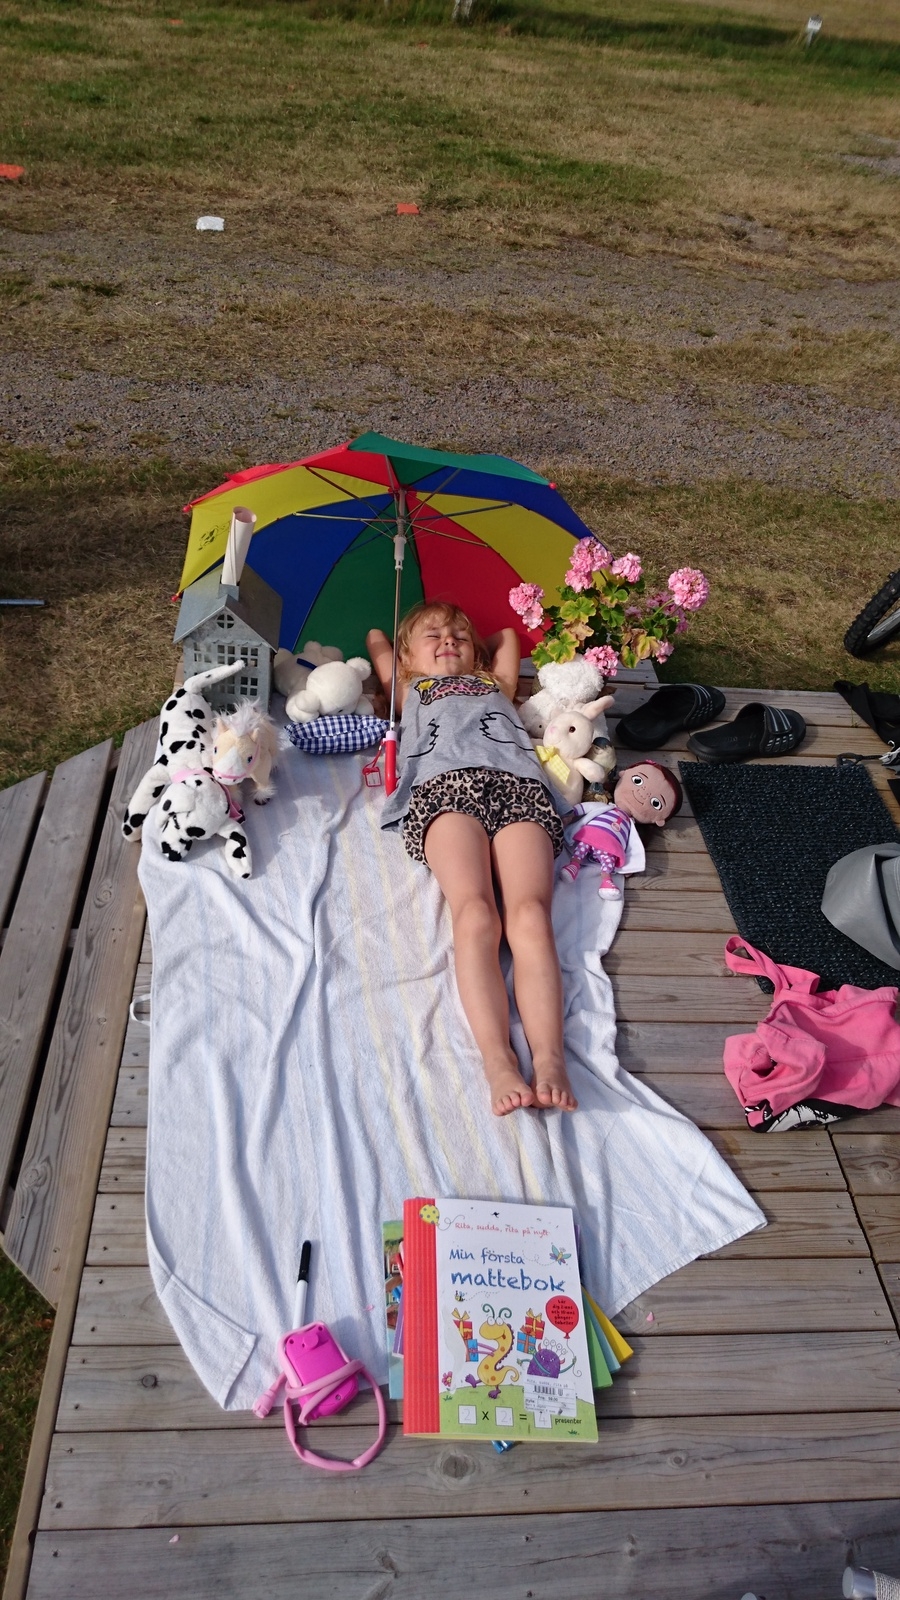 Evelina Jönsson
Evelina Jönsson njuter i solen vid farmor och farfars husvagn i Mellbystrand. Foto: Rikard Jönsson